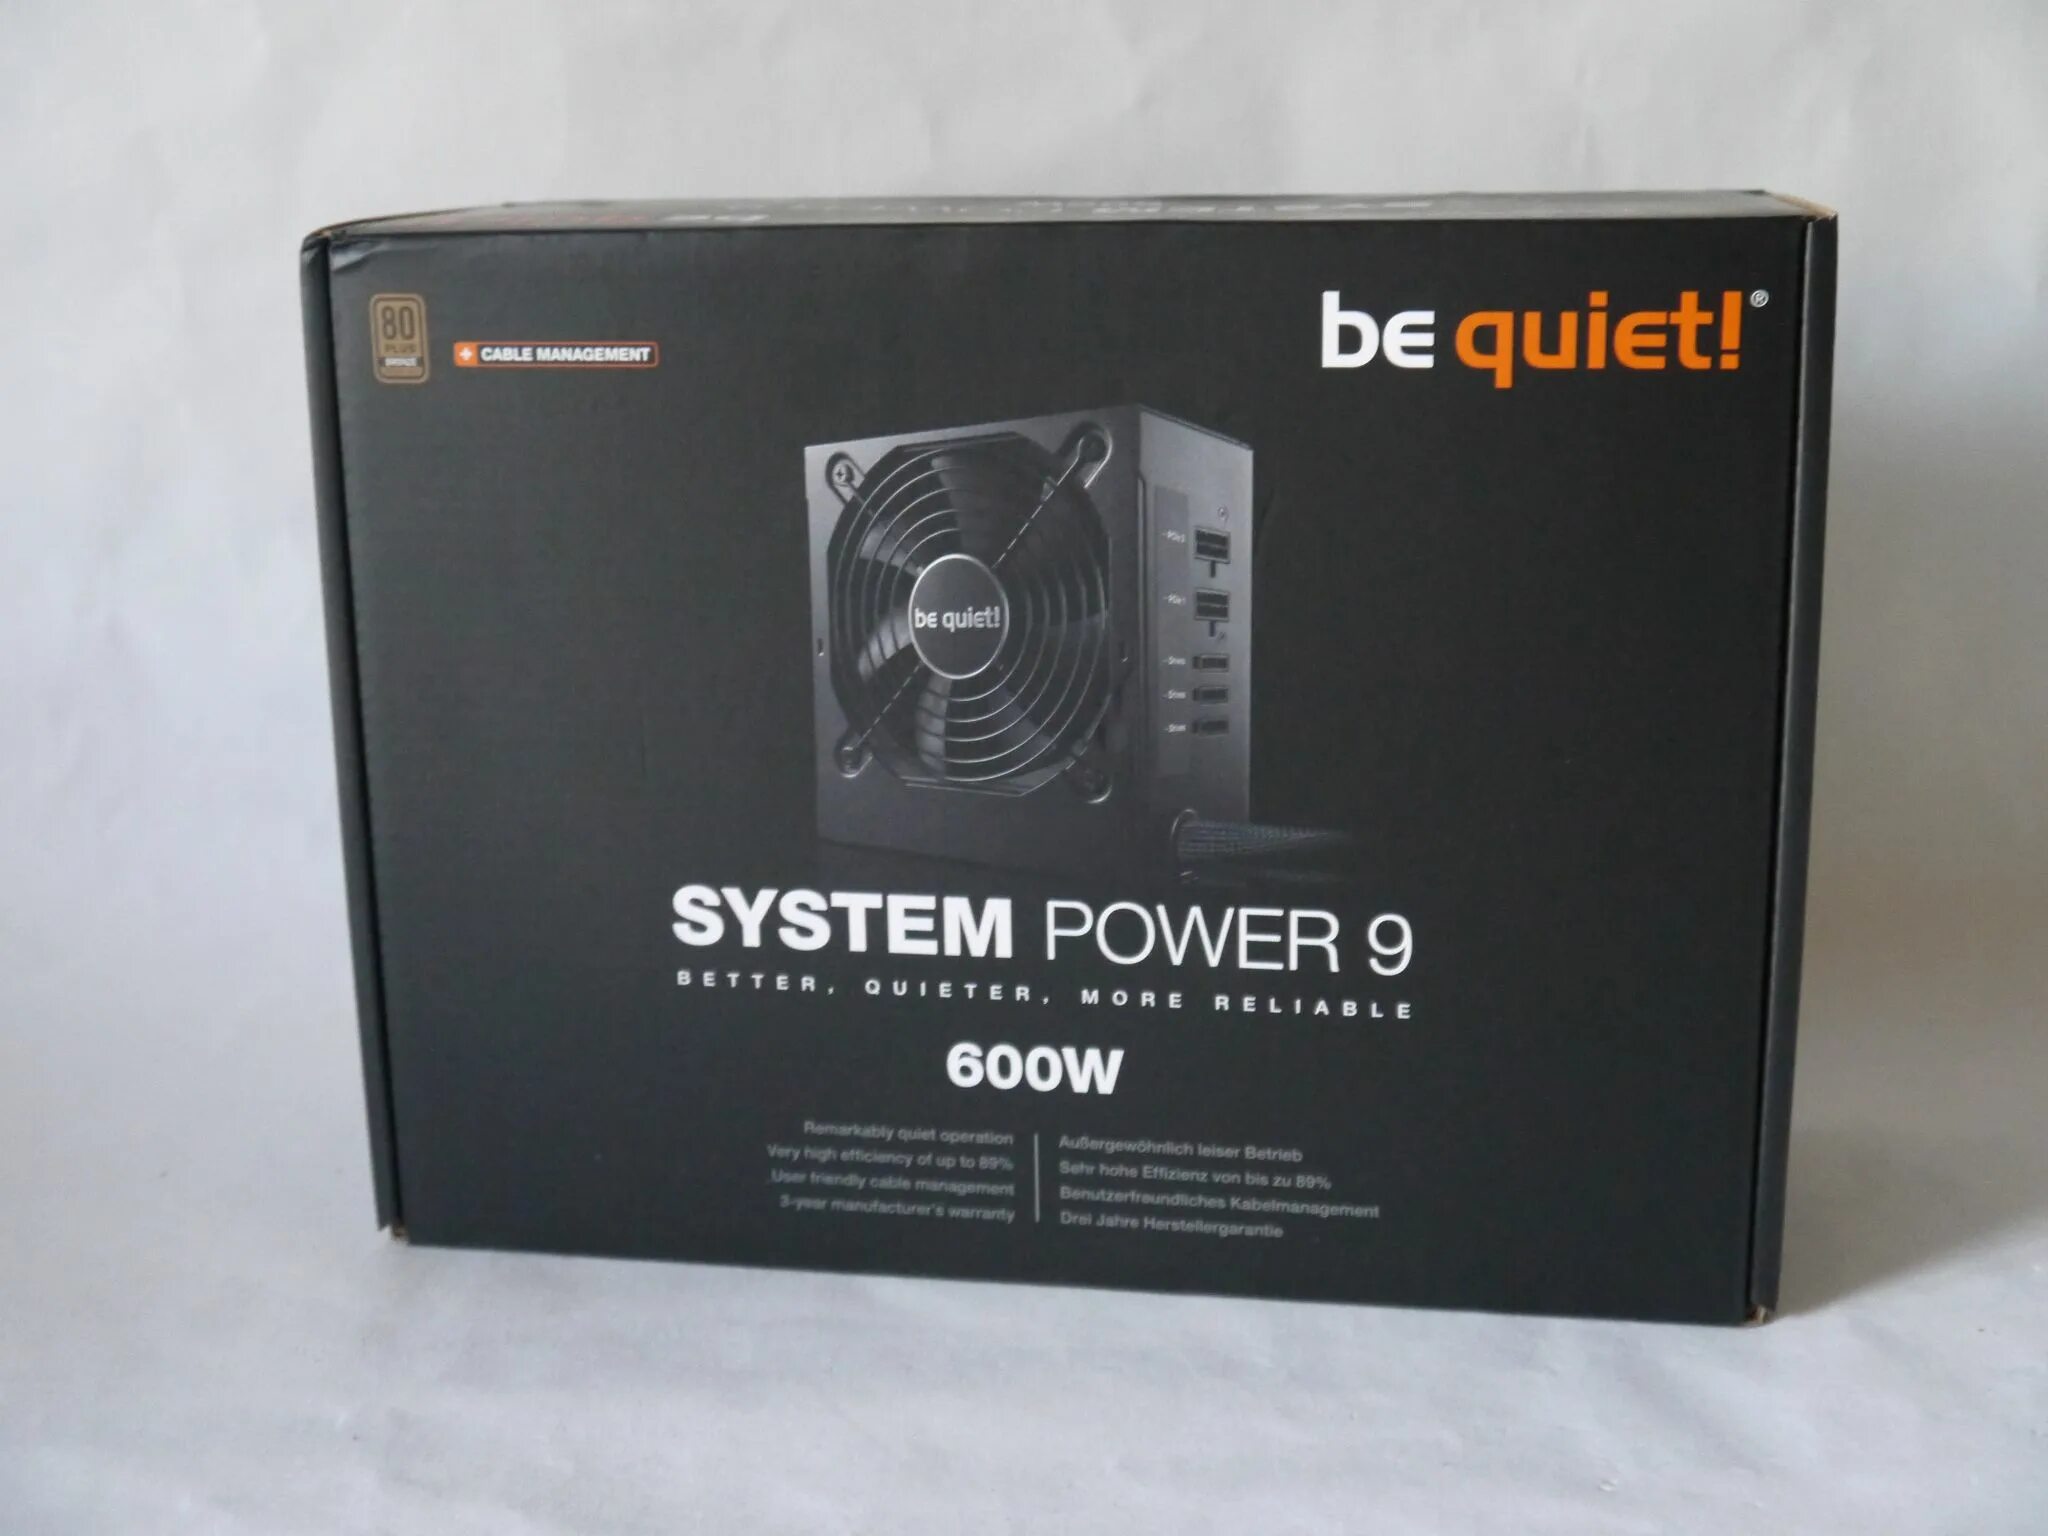 Блок питания be quiet 600w. Be quiet Power 9 600w. Be quiet! System Power 9 600w cm, 600w. Блок питания be quiet 9 600w. System power 600w